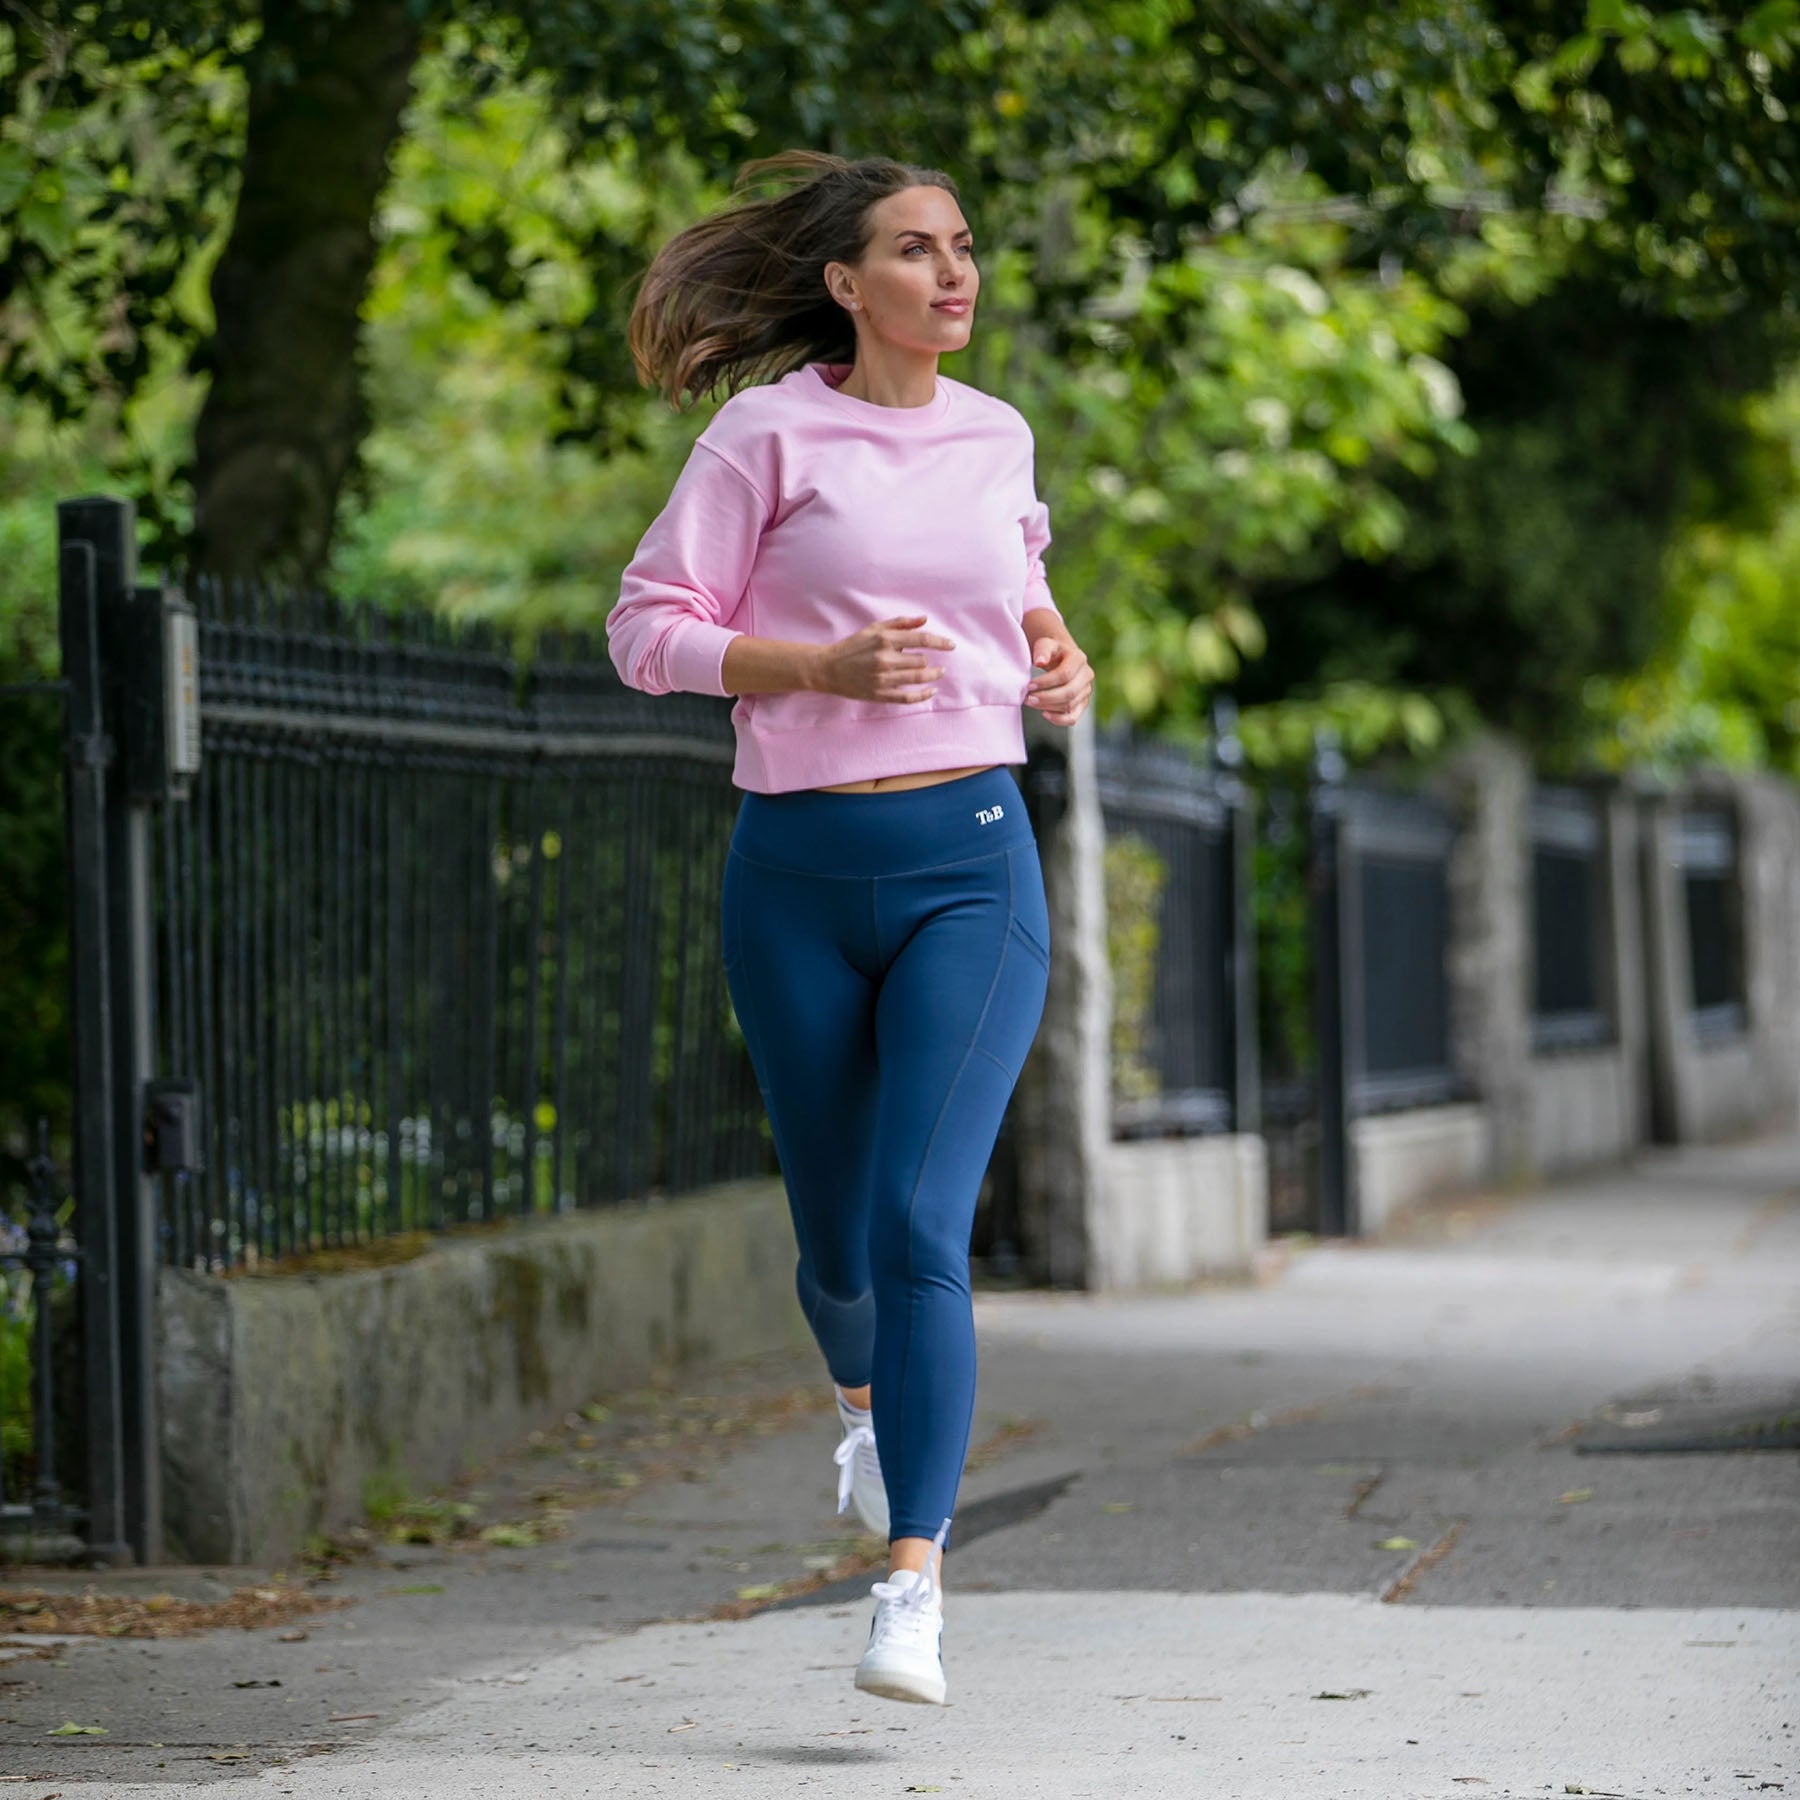 Woman running in athleisurewear